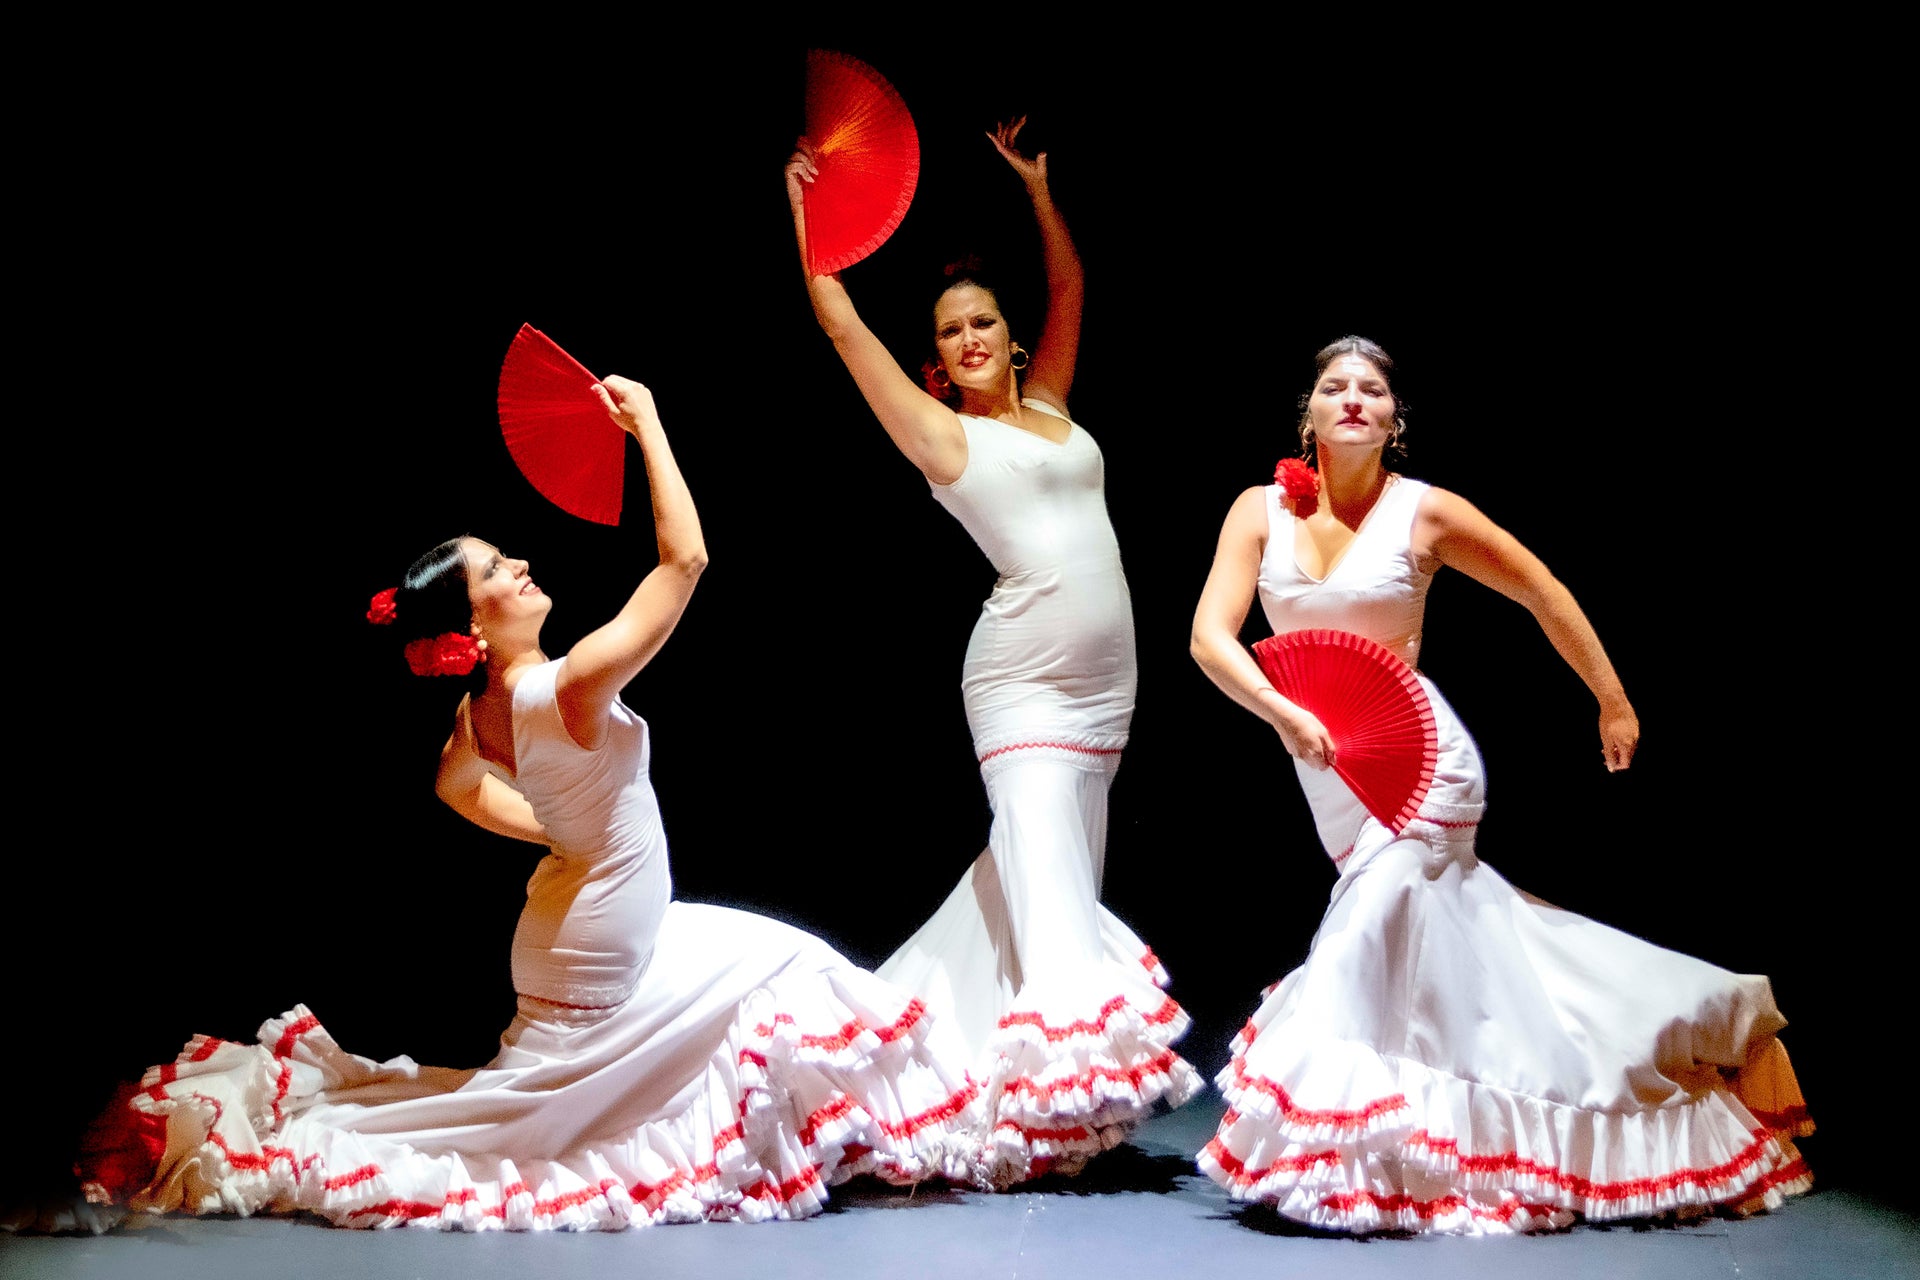 Espetáculo no Teatro Flamenco Sevilla